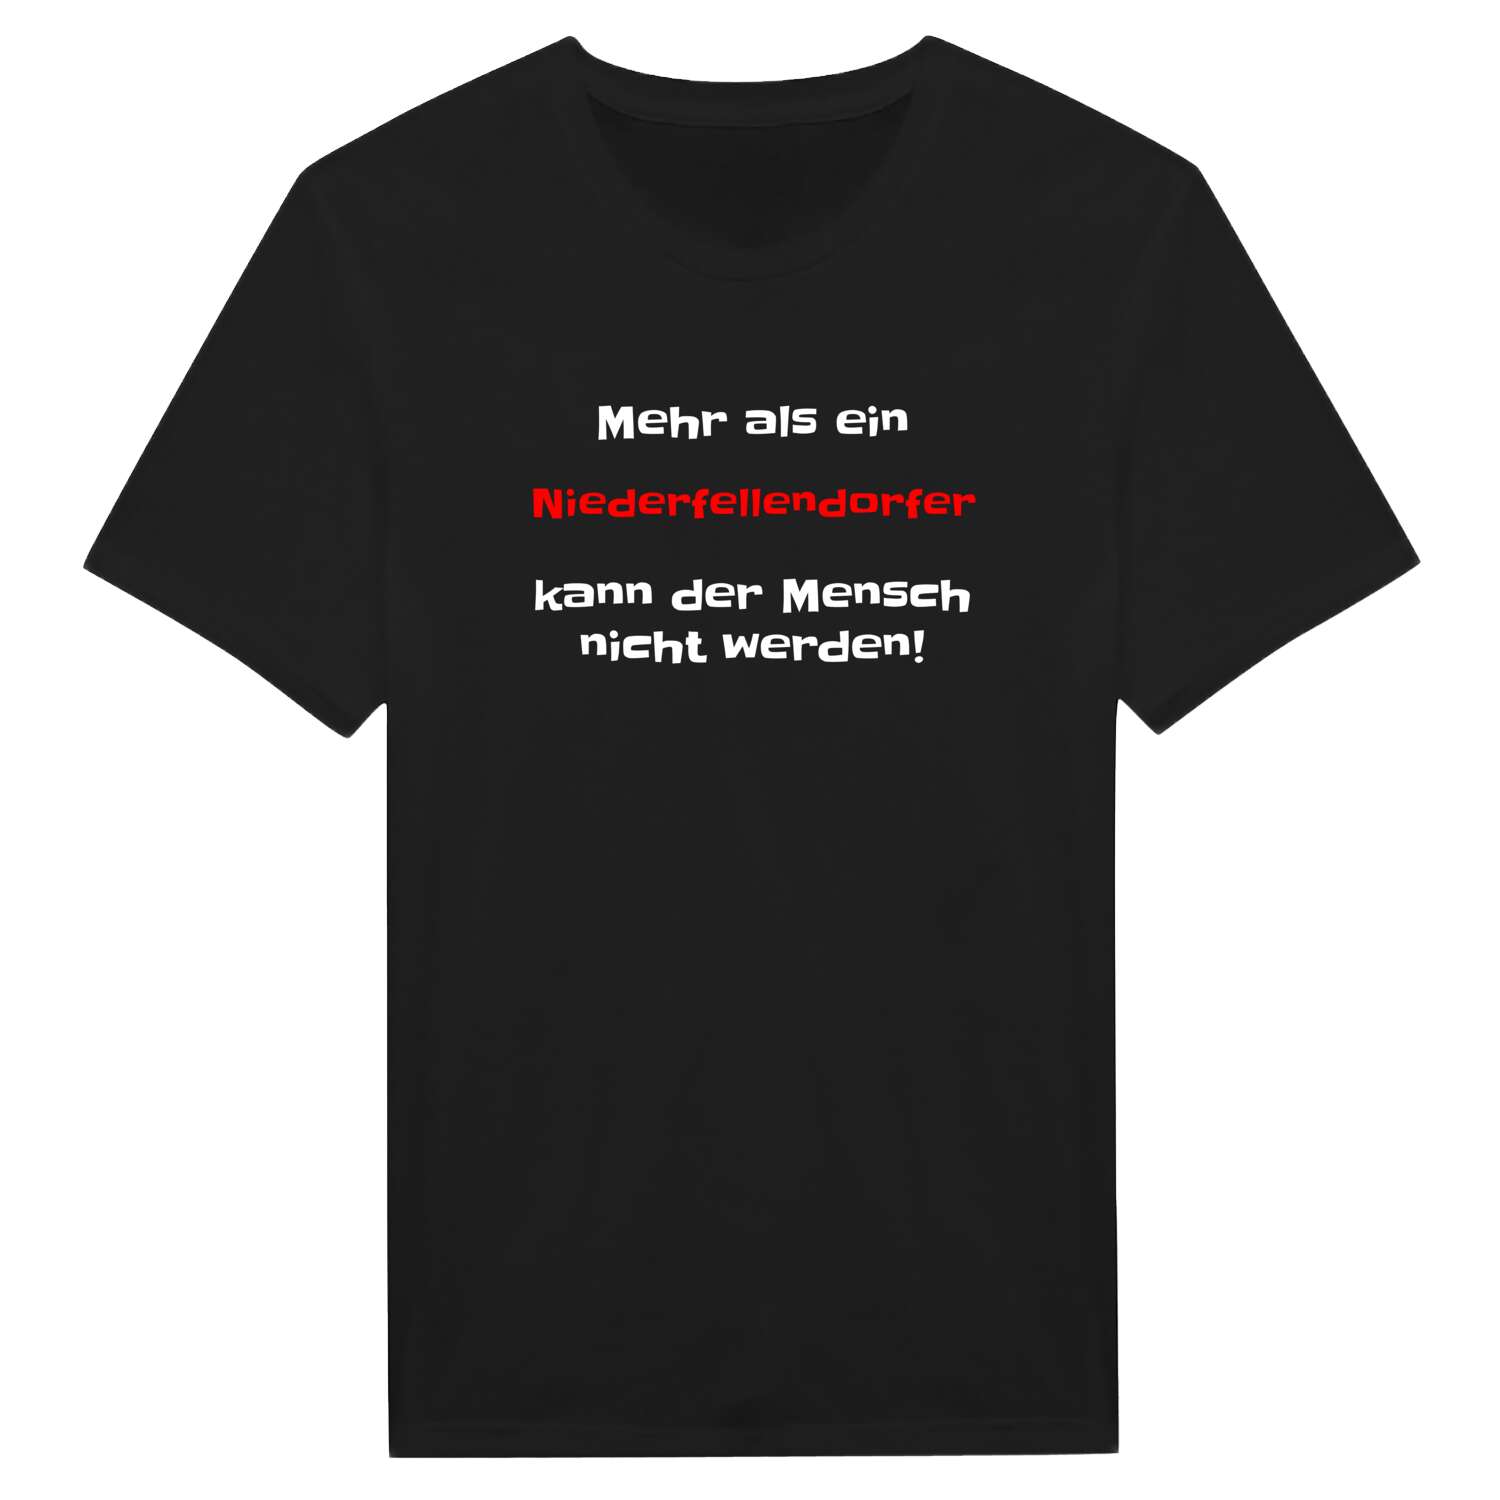 Niederfellendorf T-Shirt »Mehr als ein«